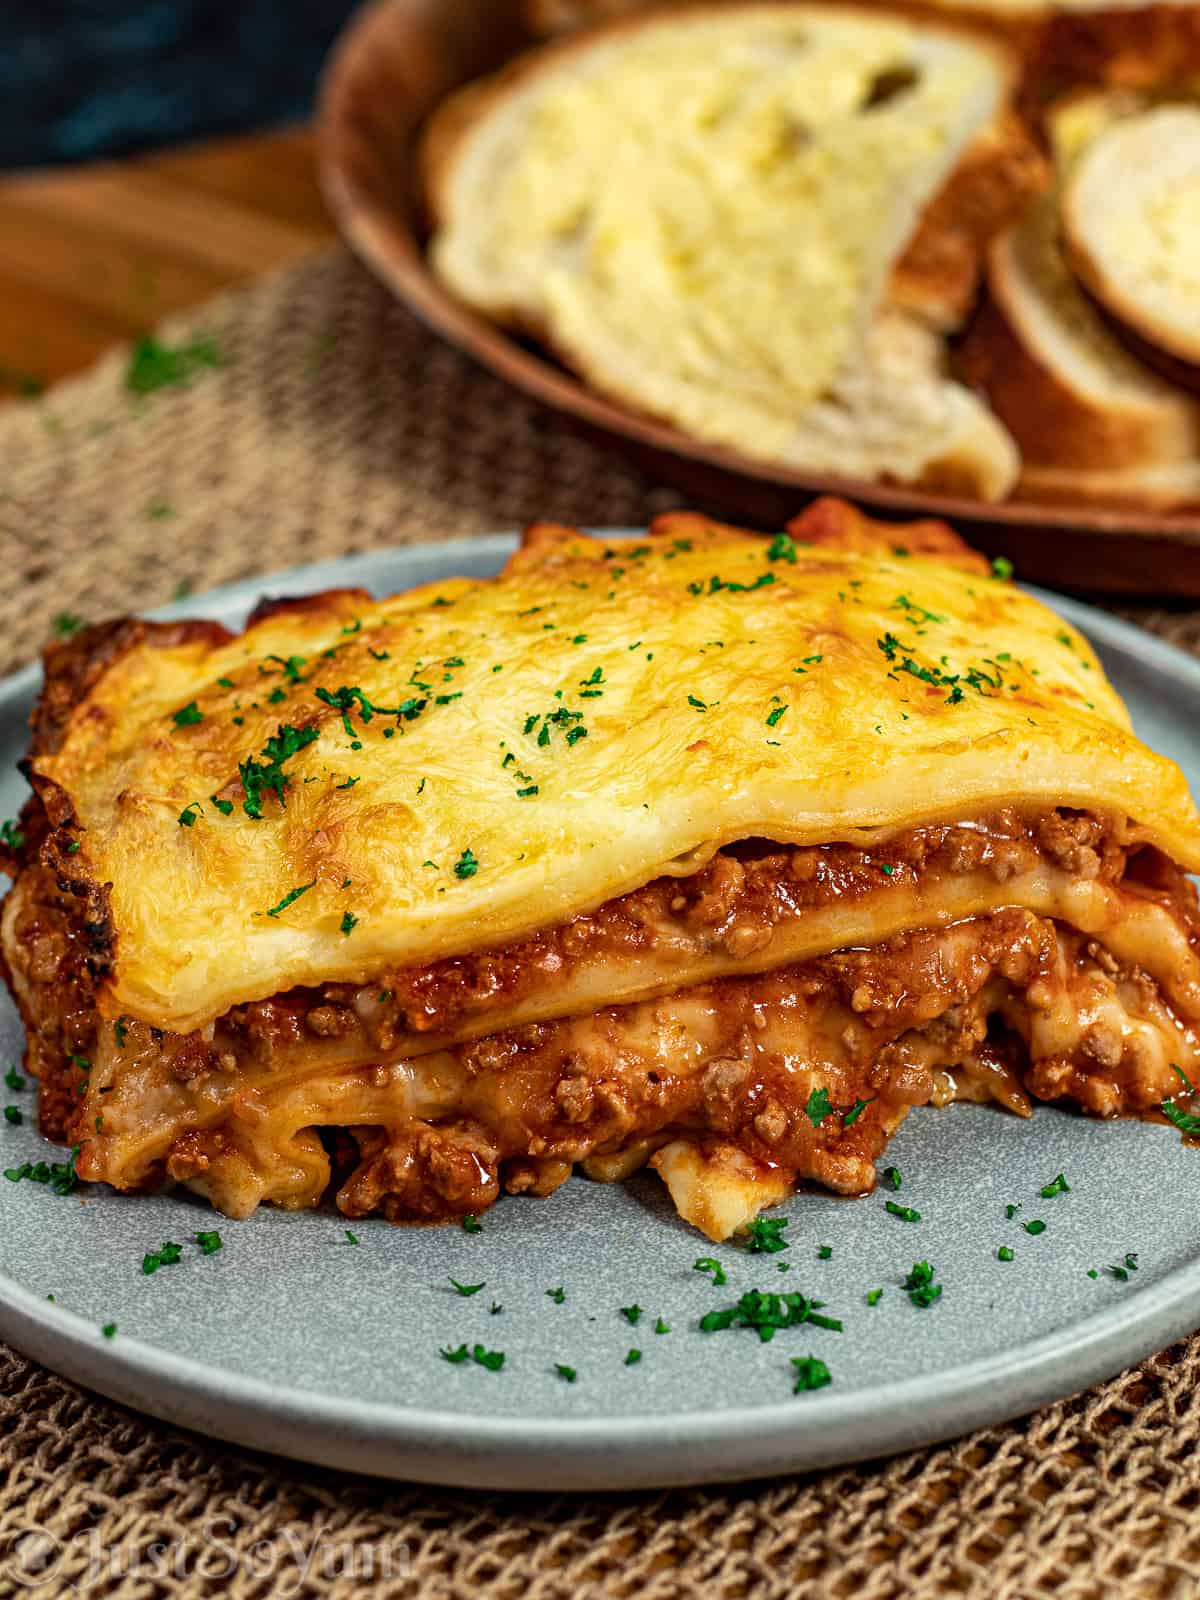 website-image-for-weber-q-beef--pork-lasagna